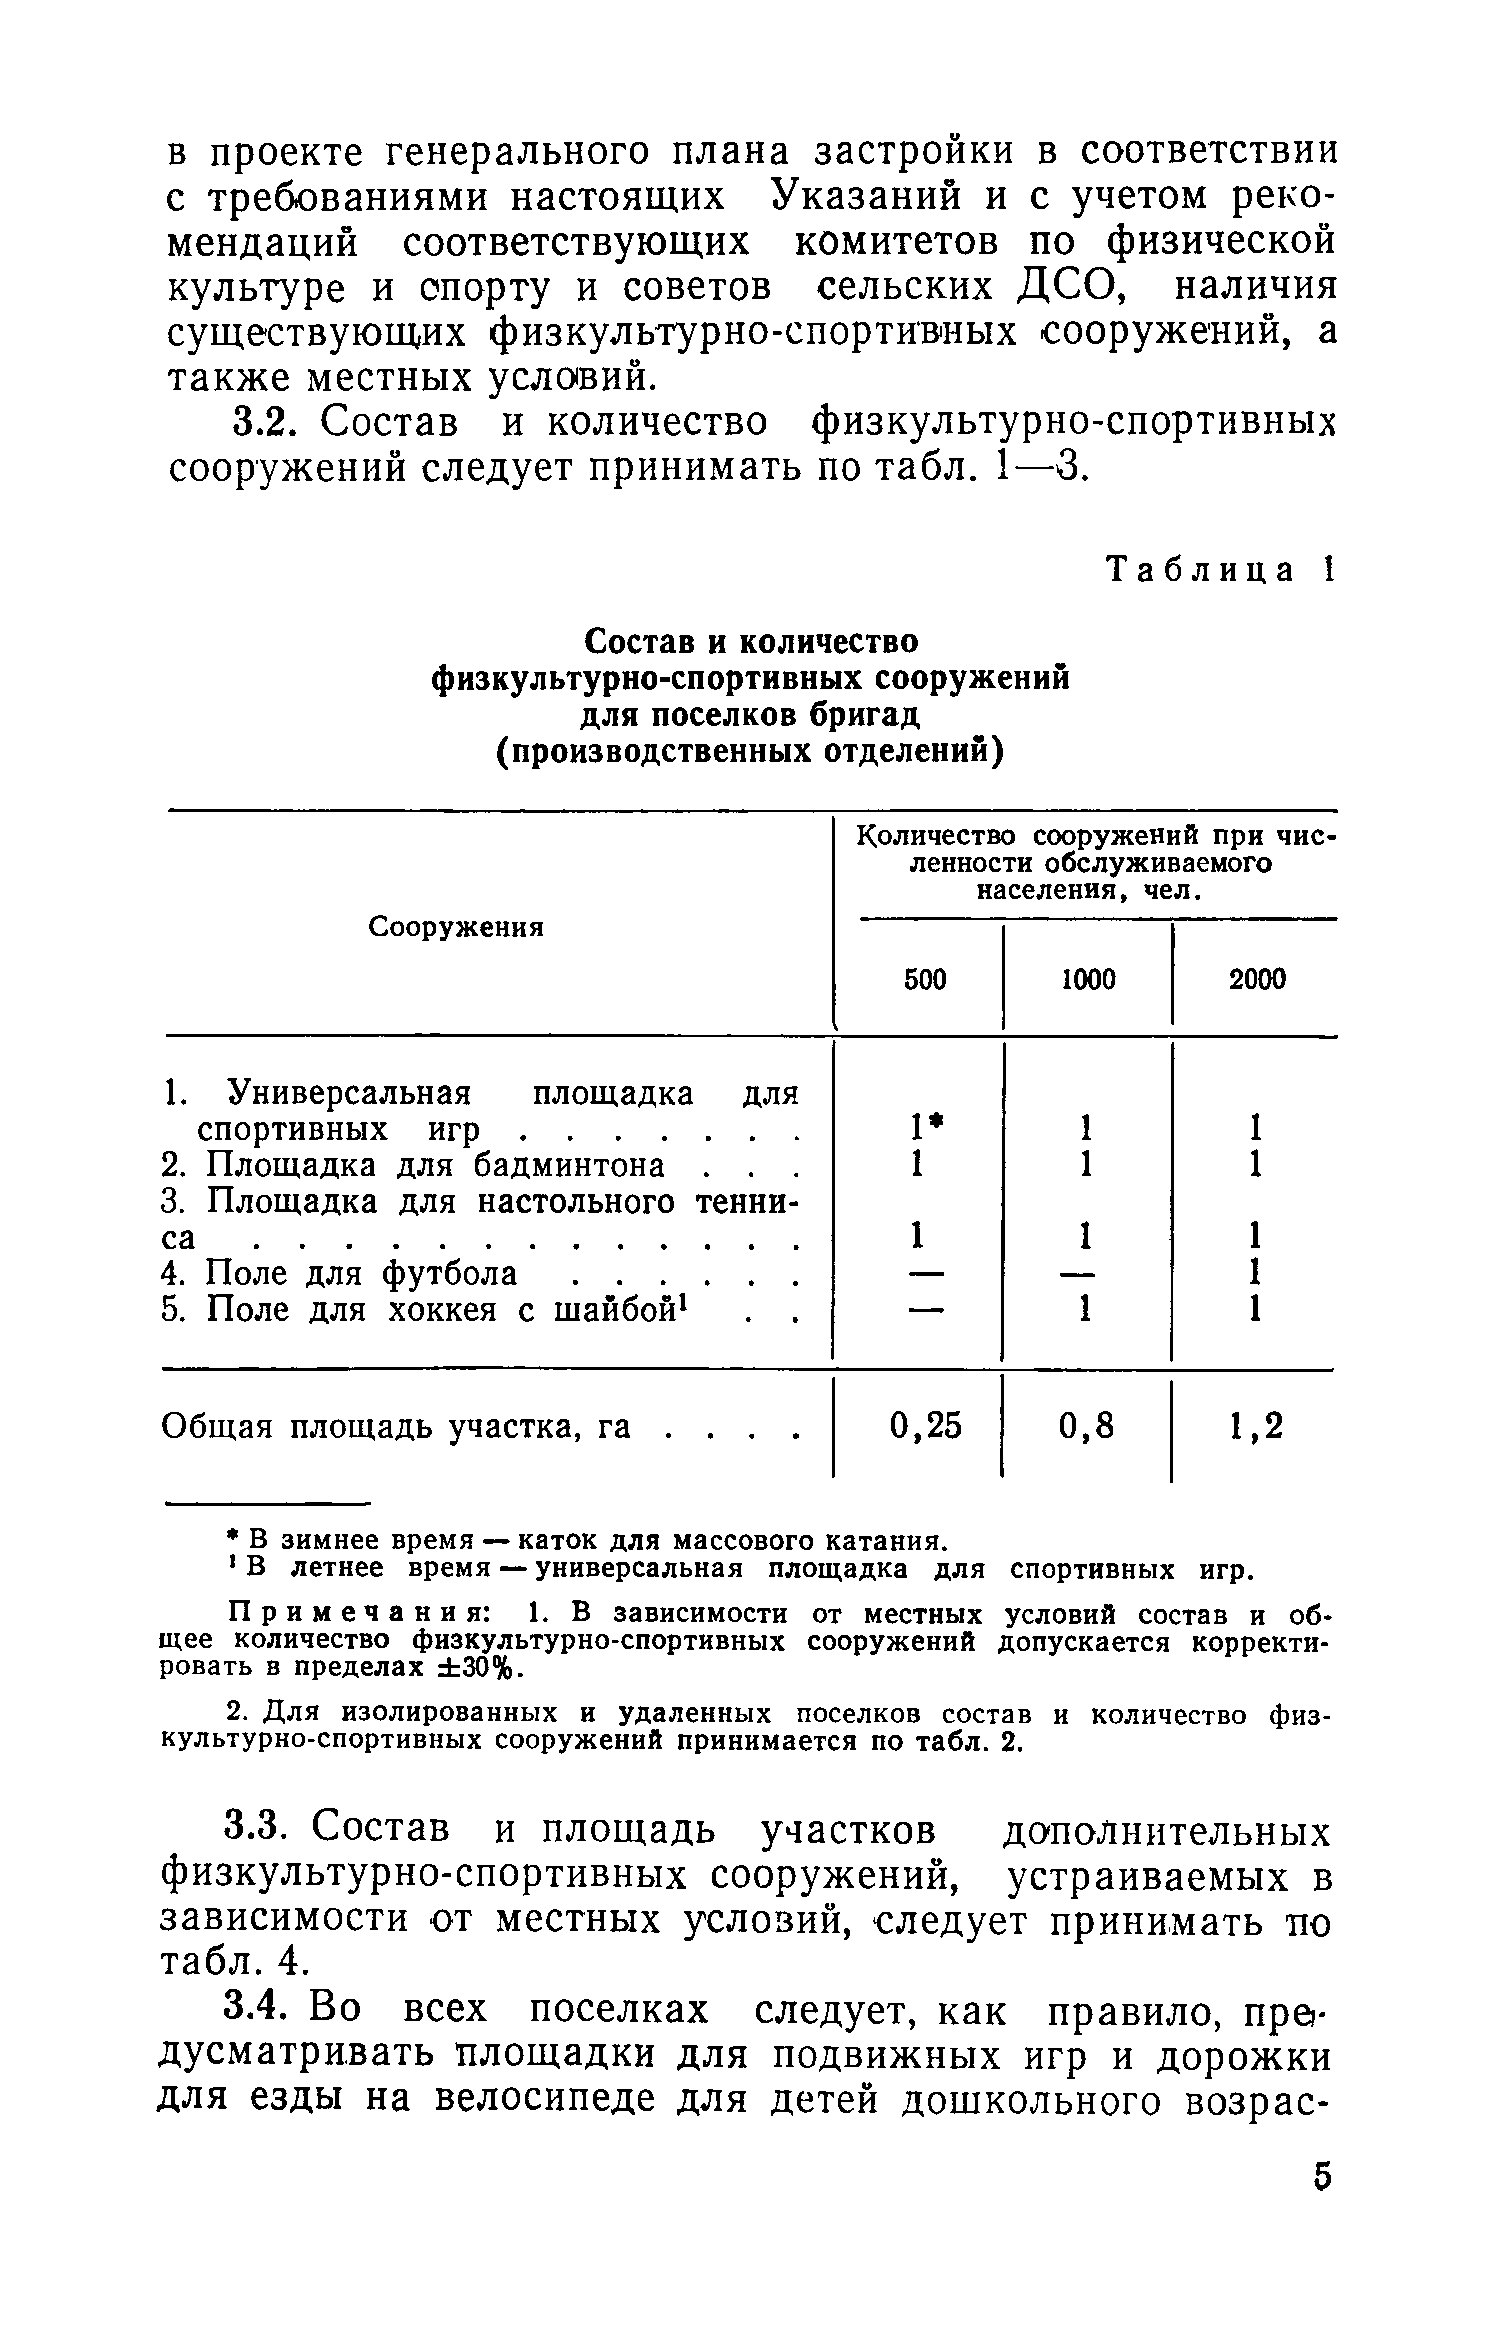 ВСН 16-73/Госгражданстрой